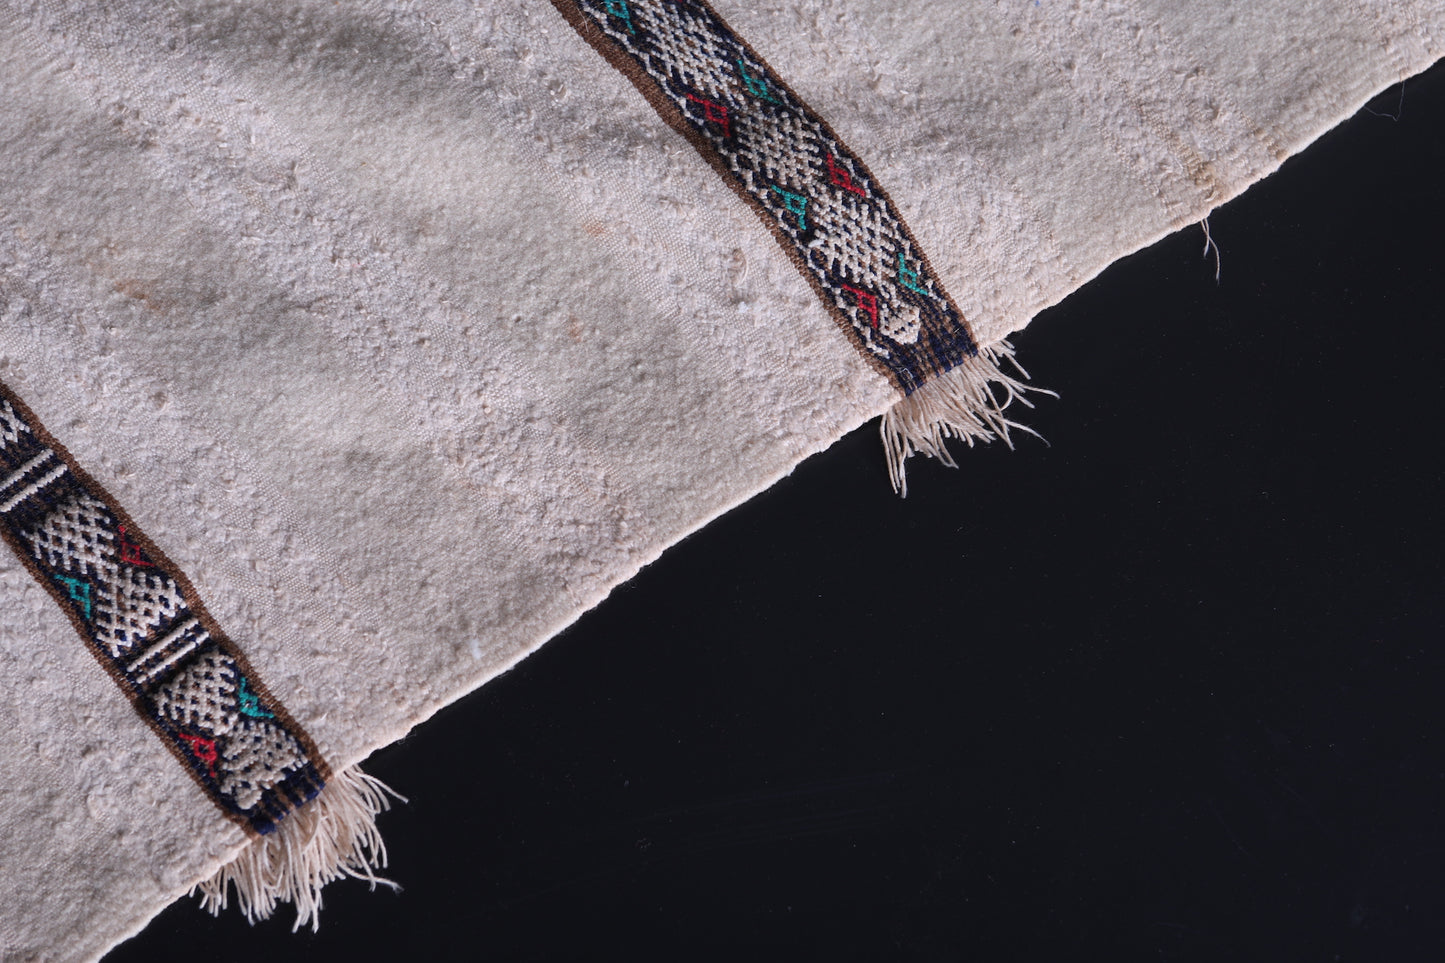 Vintage moroccan berber handwoven wedding blanket 3.6 FT X 6.5 FT